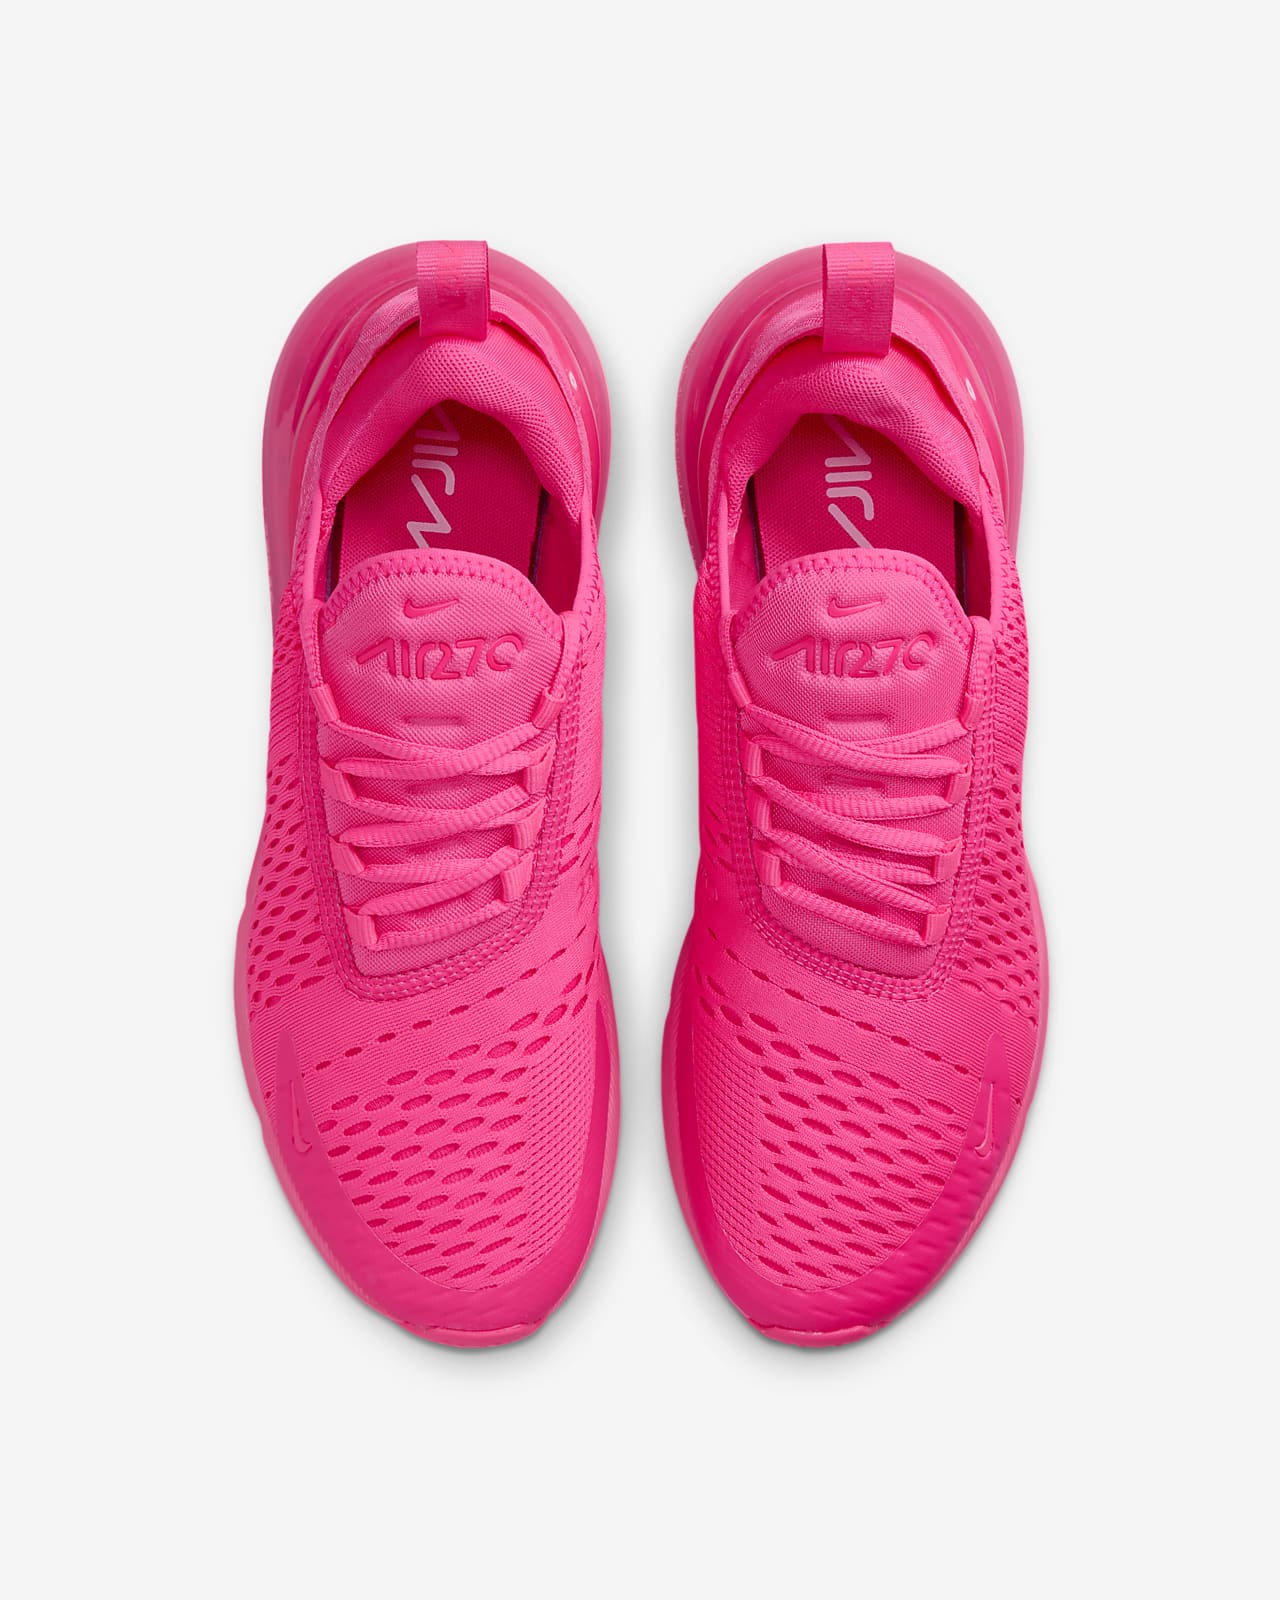 Nike Air Max 270 Baby/Toddler Shoe.